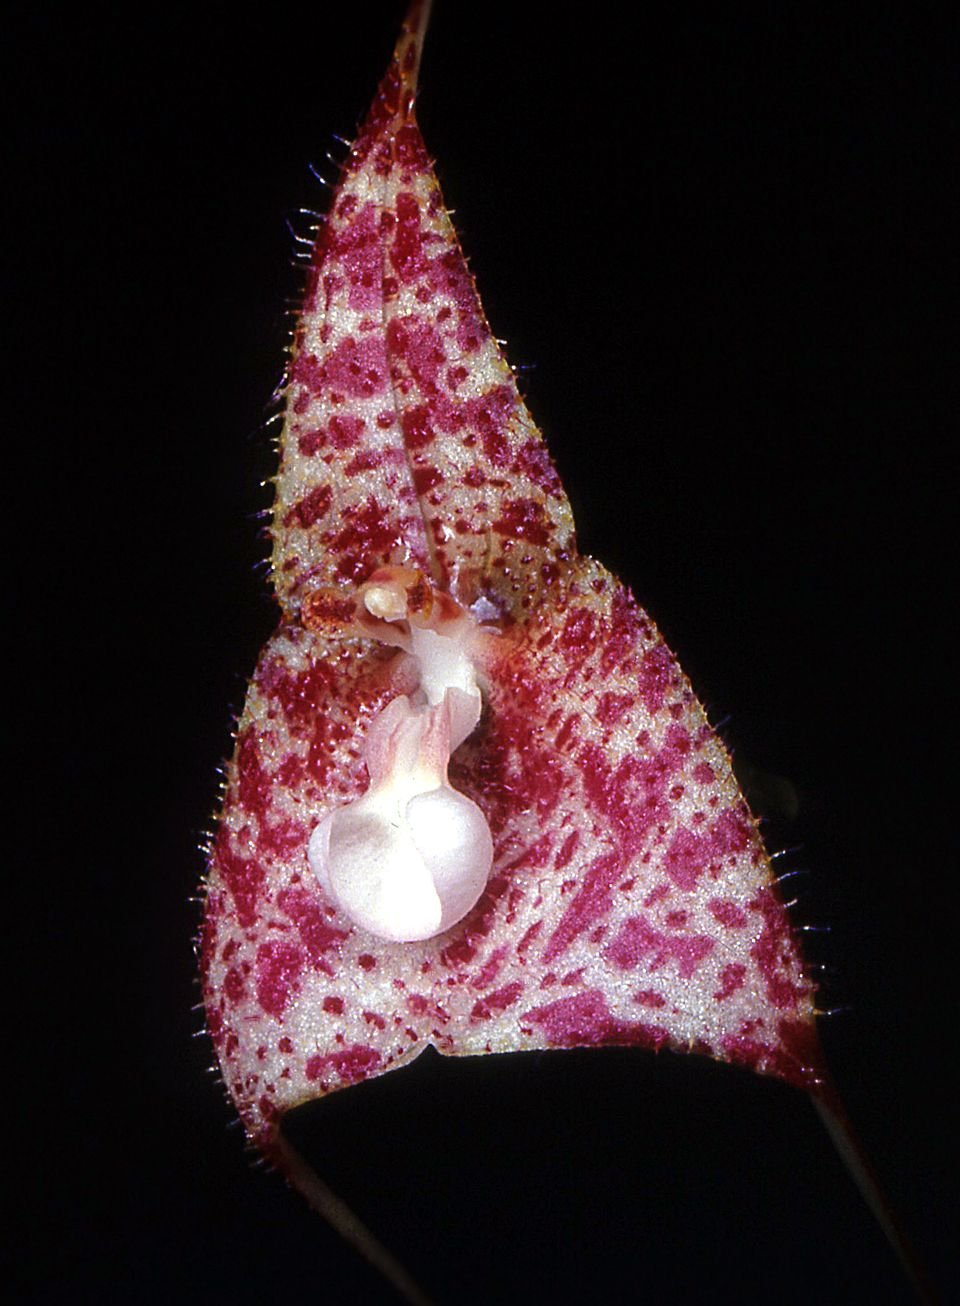 orhideya-drakula-foto-opisanie-vidy-vyrashhivanie-v-domashnih-usloviyah-8